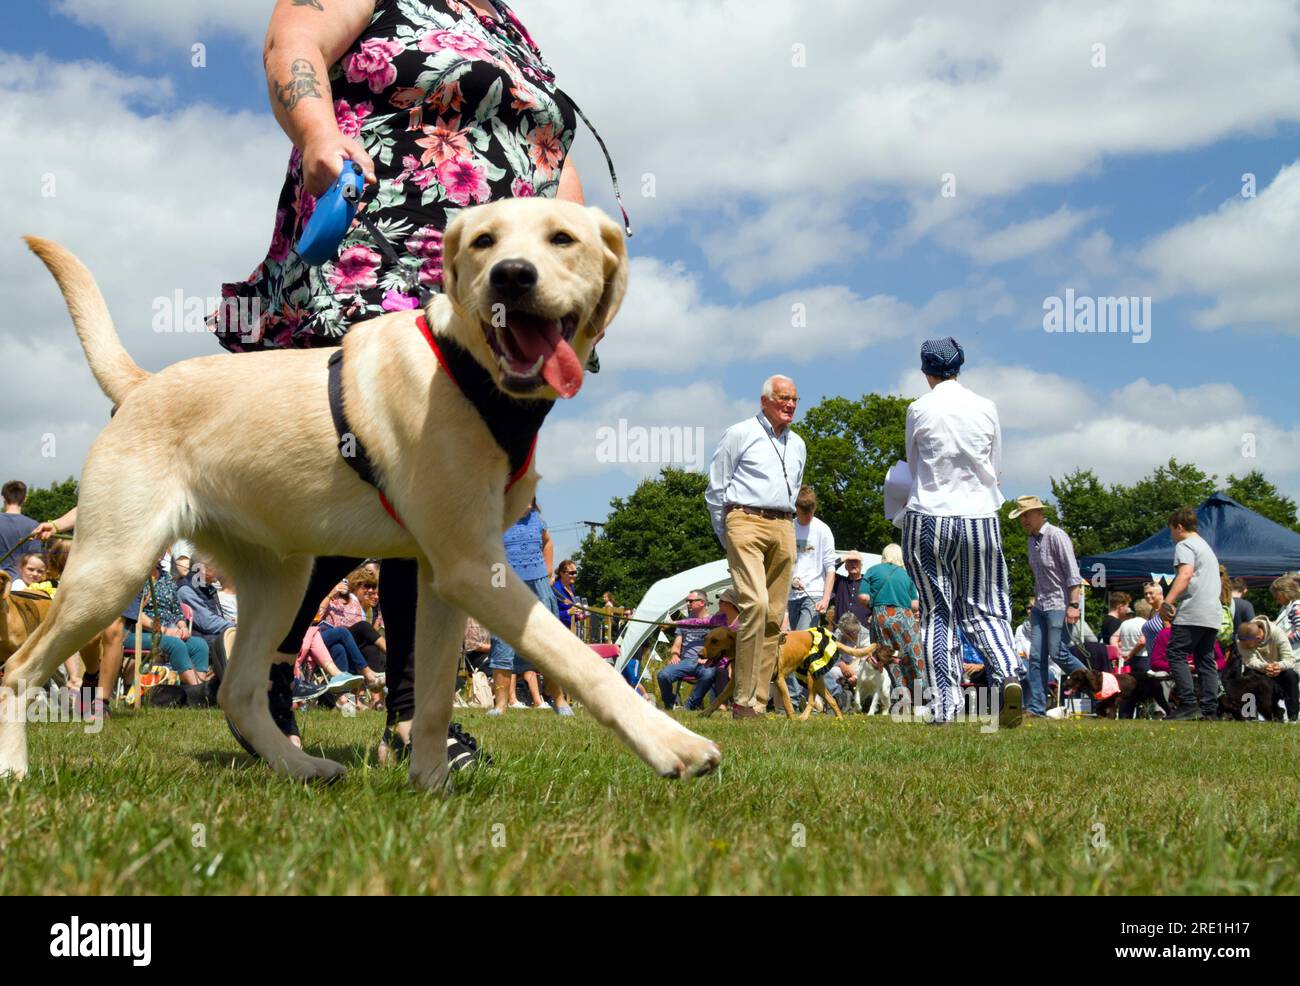 Deux juges regardent Une parade de chiens et de propriétaires lors D'Un spectacle canin avec des spectateurs assis à Un festival de village, Fair, Angleterre Royaume-Uni Banque D'Images